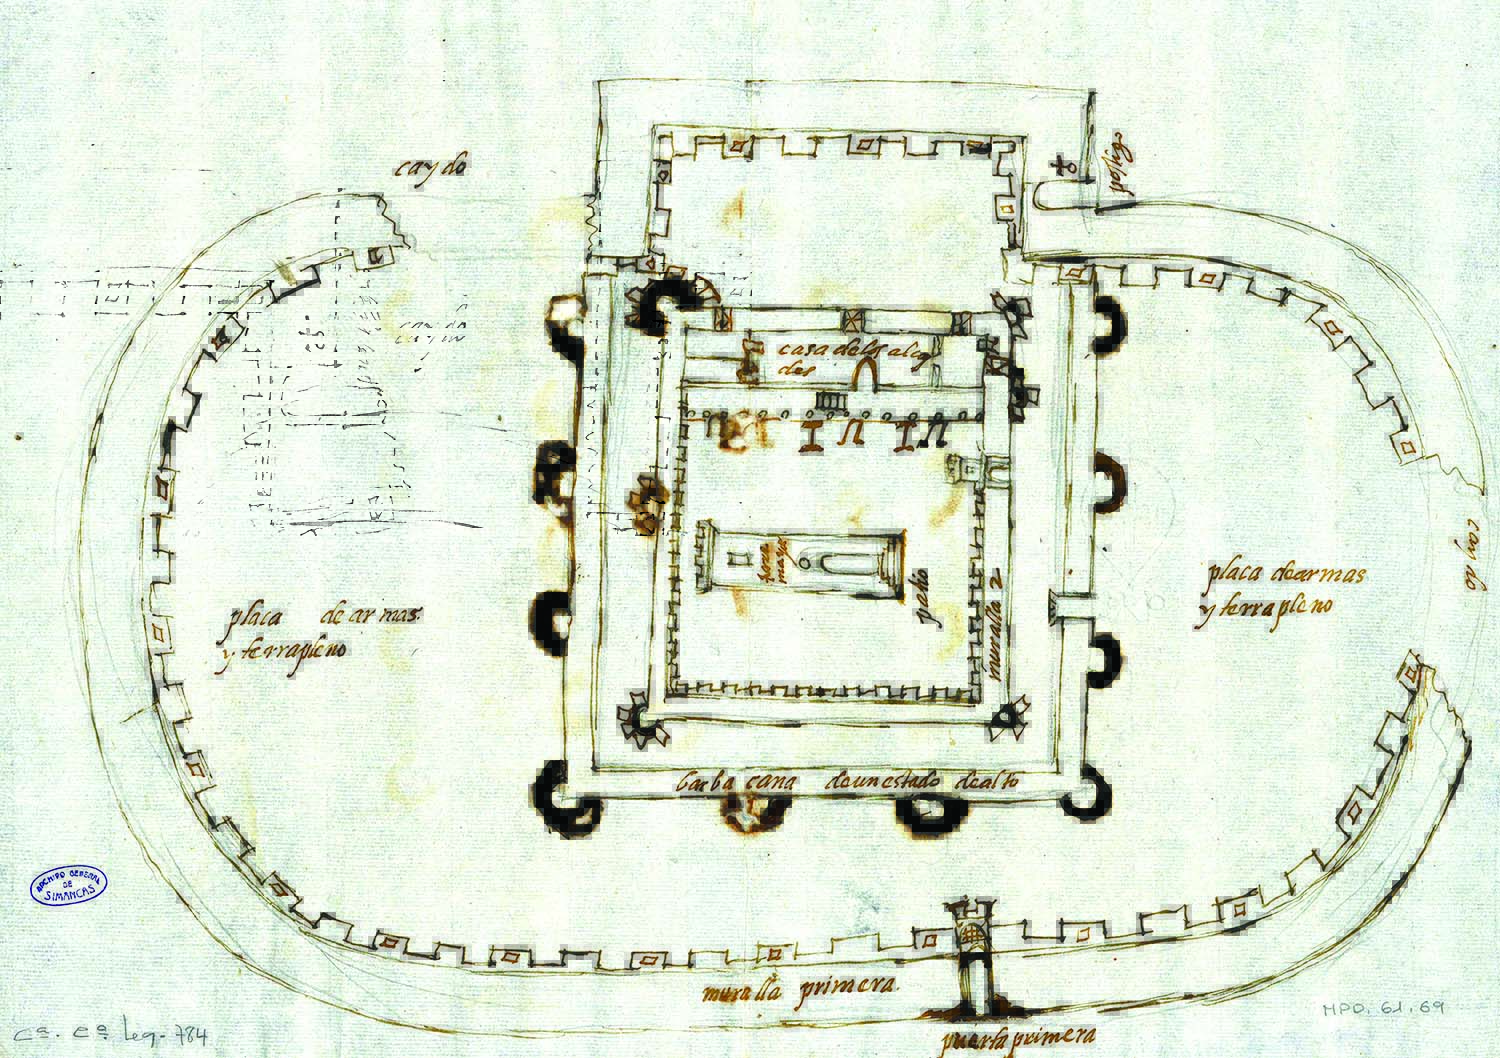 Plano do castelo e a torre de Viana do ano 1596 depositado no Archivo General de Simancas